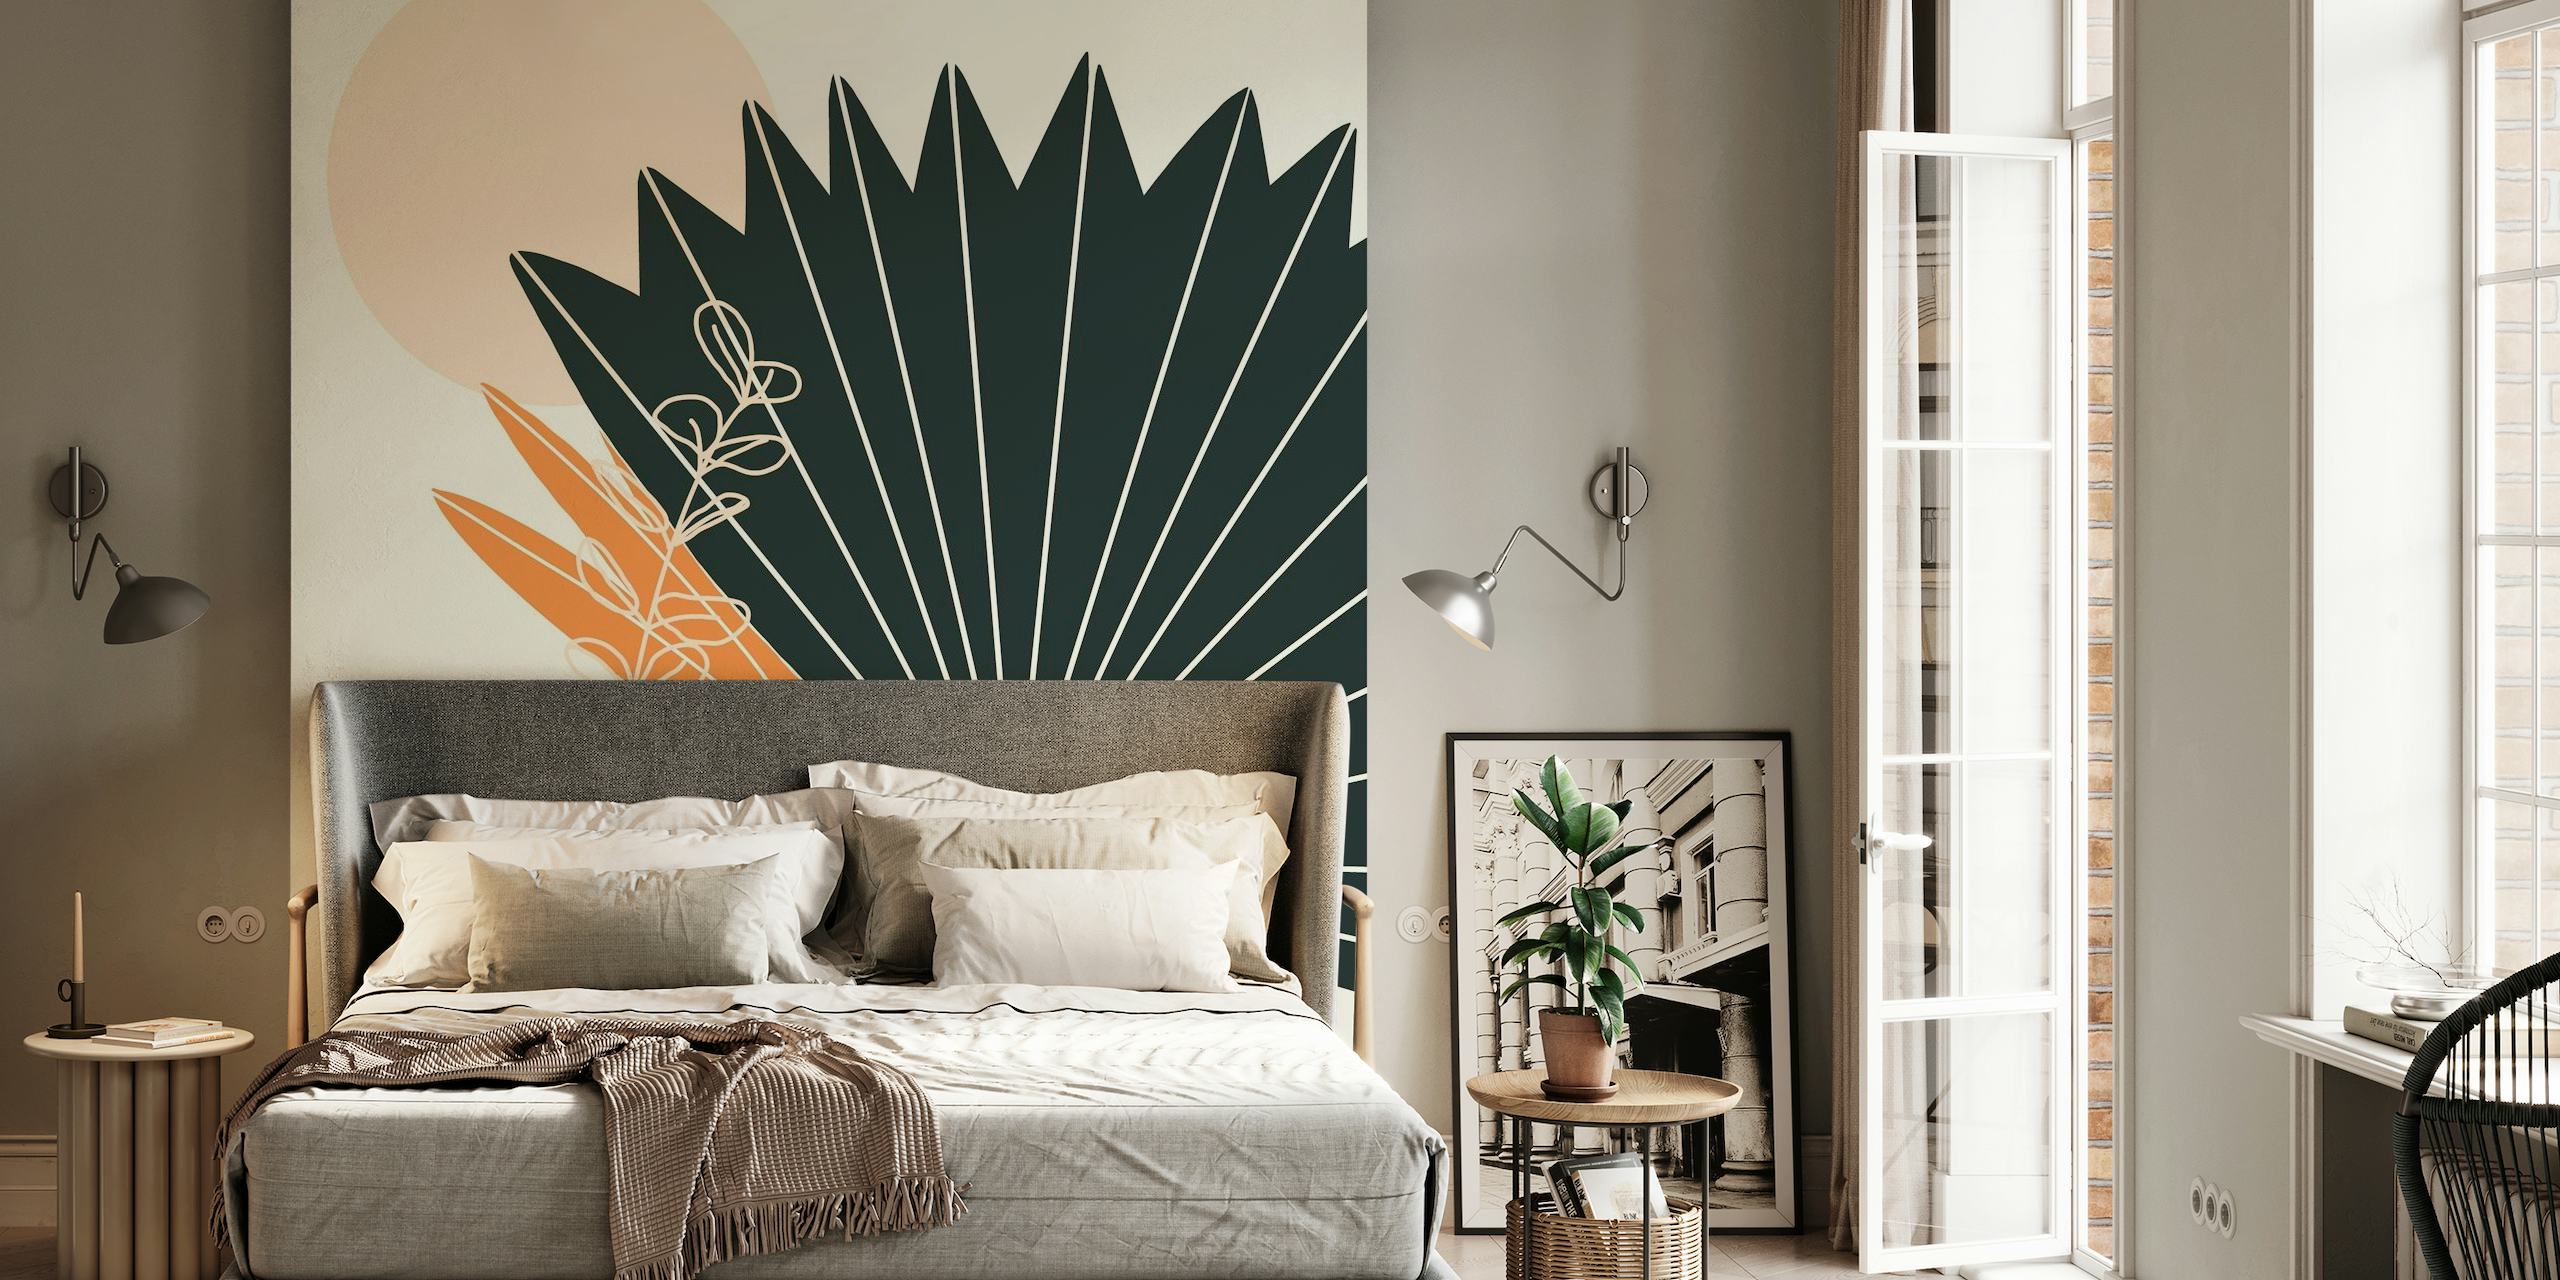 Carta da parati astratta con foglie di palma stilizzate e vaso artigianale nei toni della terra